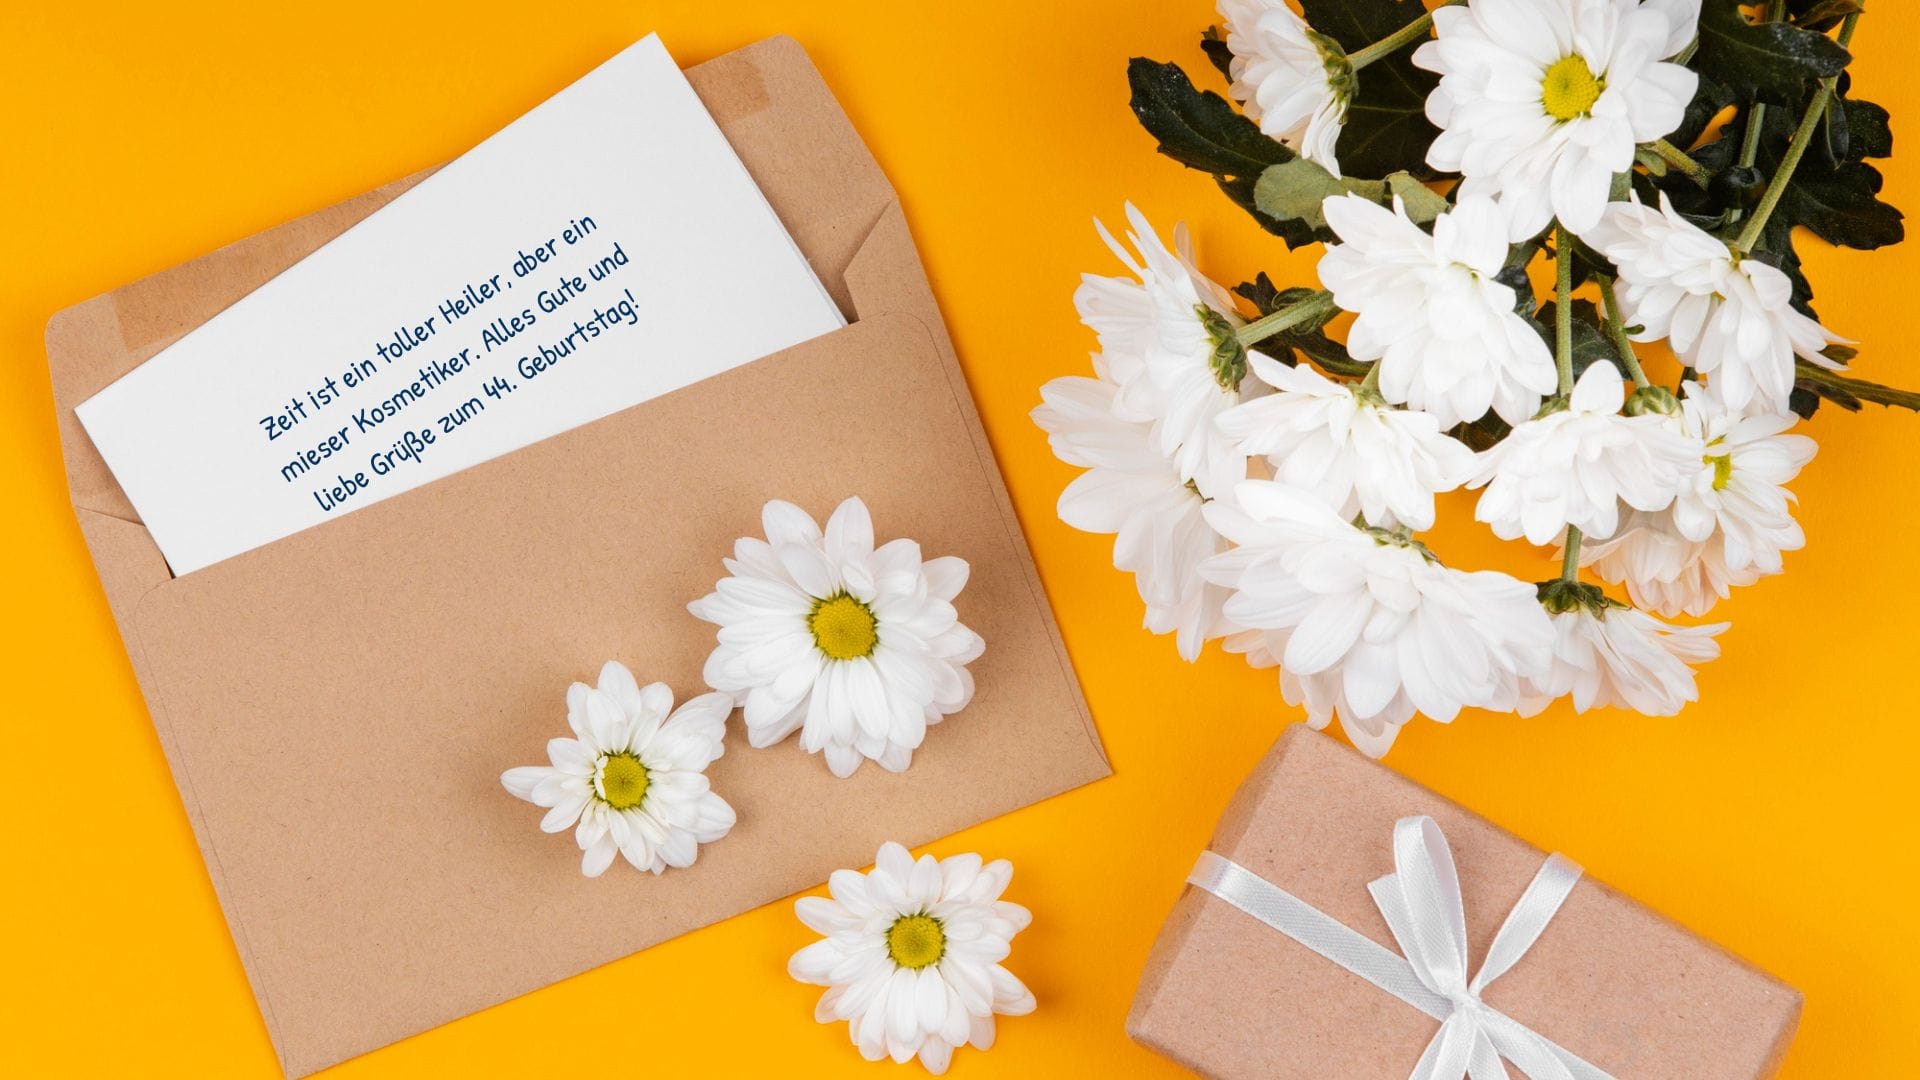 Blumen, Geschenk und eine Karte mit einem lustigen und liebevollen Geburtstagsgruß für 44